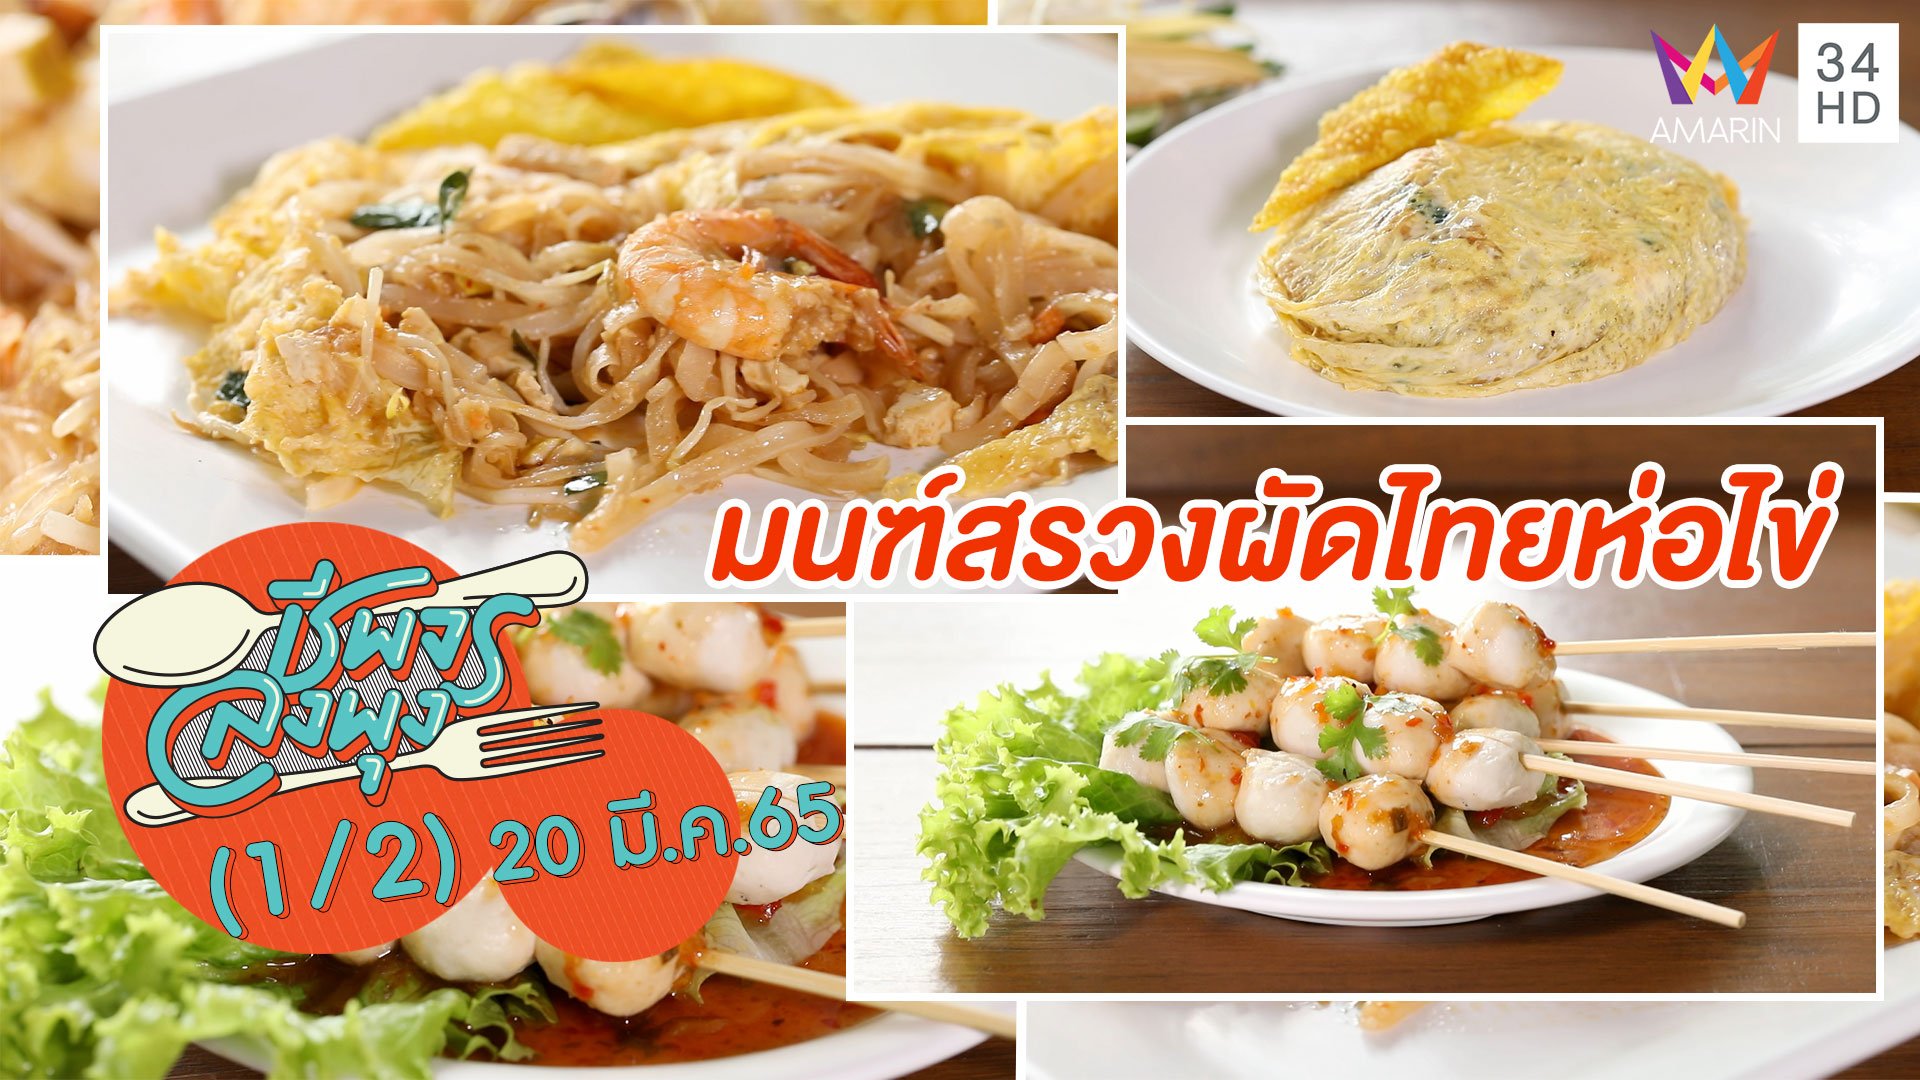 ลิ้มรสผัดไทยแบบโบราณ @ ร้านมนฑ์สรวงผัดไทยห่อไข่ | ชีพจรลงพุง | 20 มี.ค. 65 (1/2) | AMARIN TVHD34